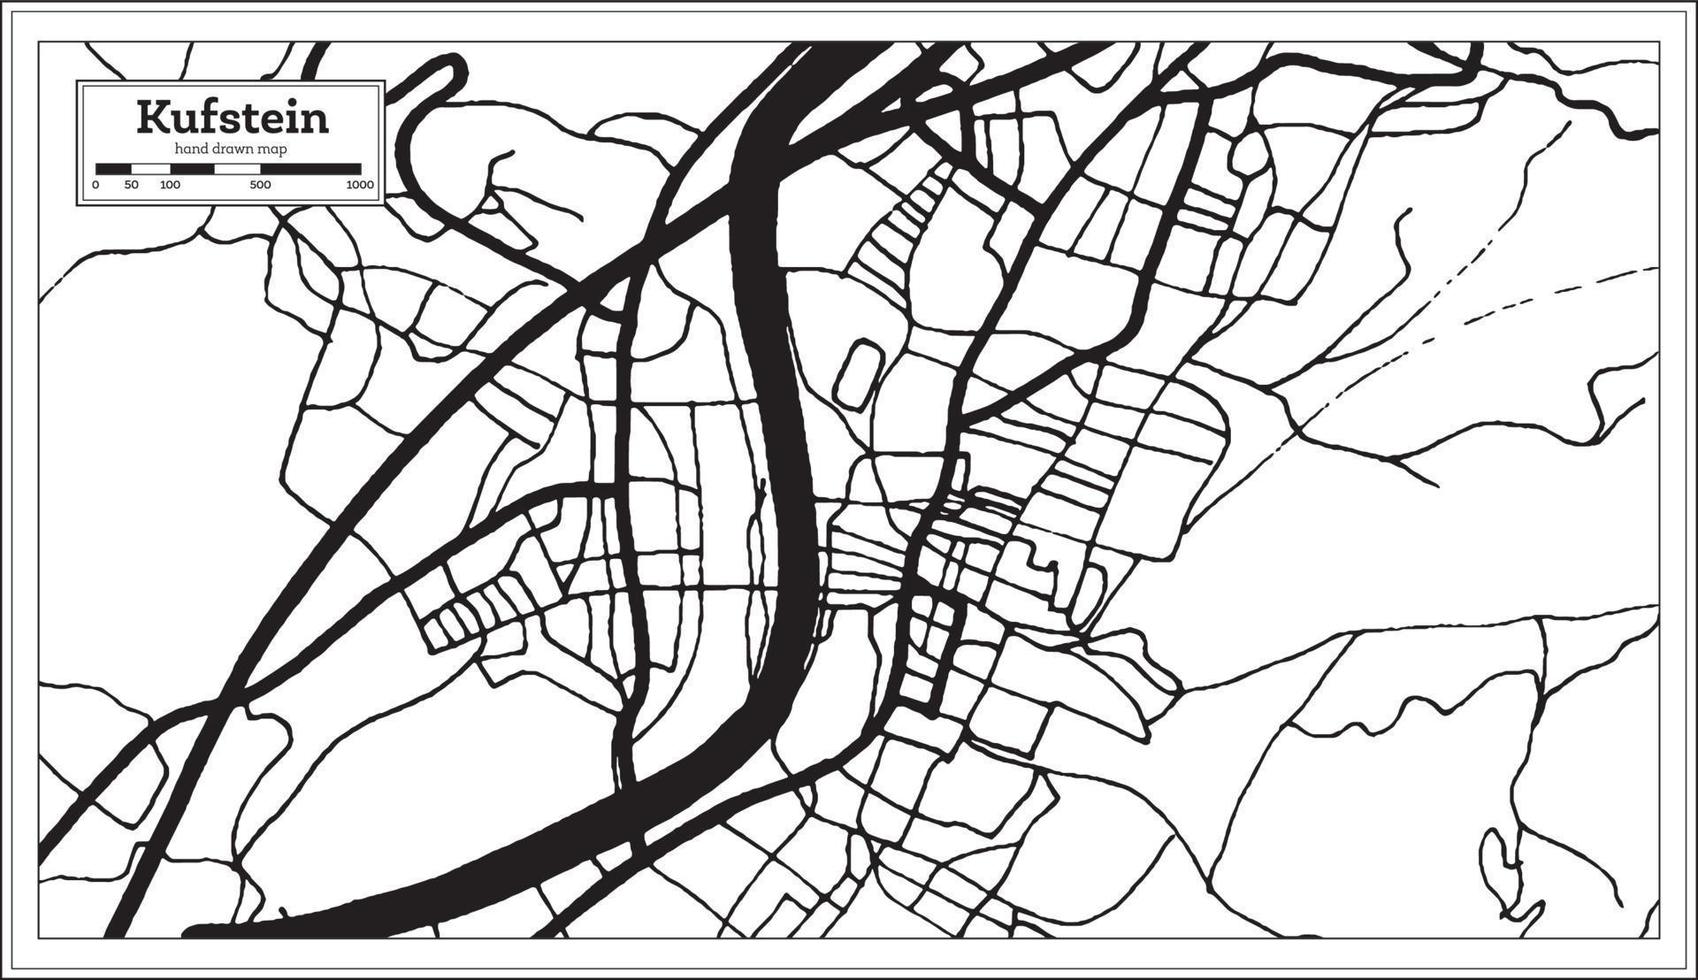 carte de la ville de kufstein autriche en noir et blanc dans un style rétro. carte muette. vecteur